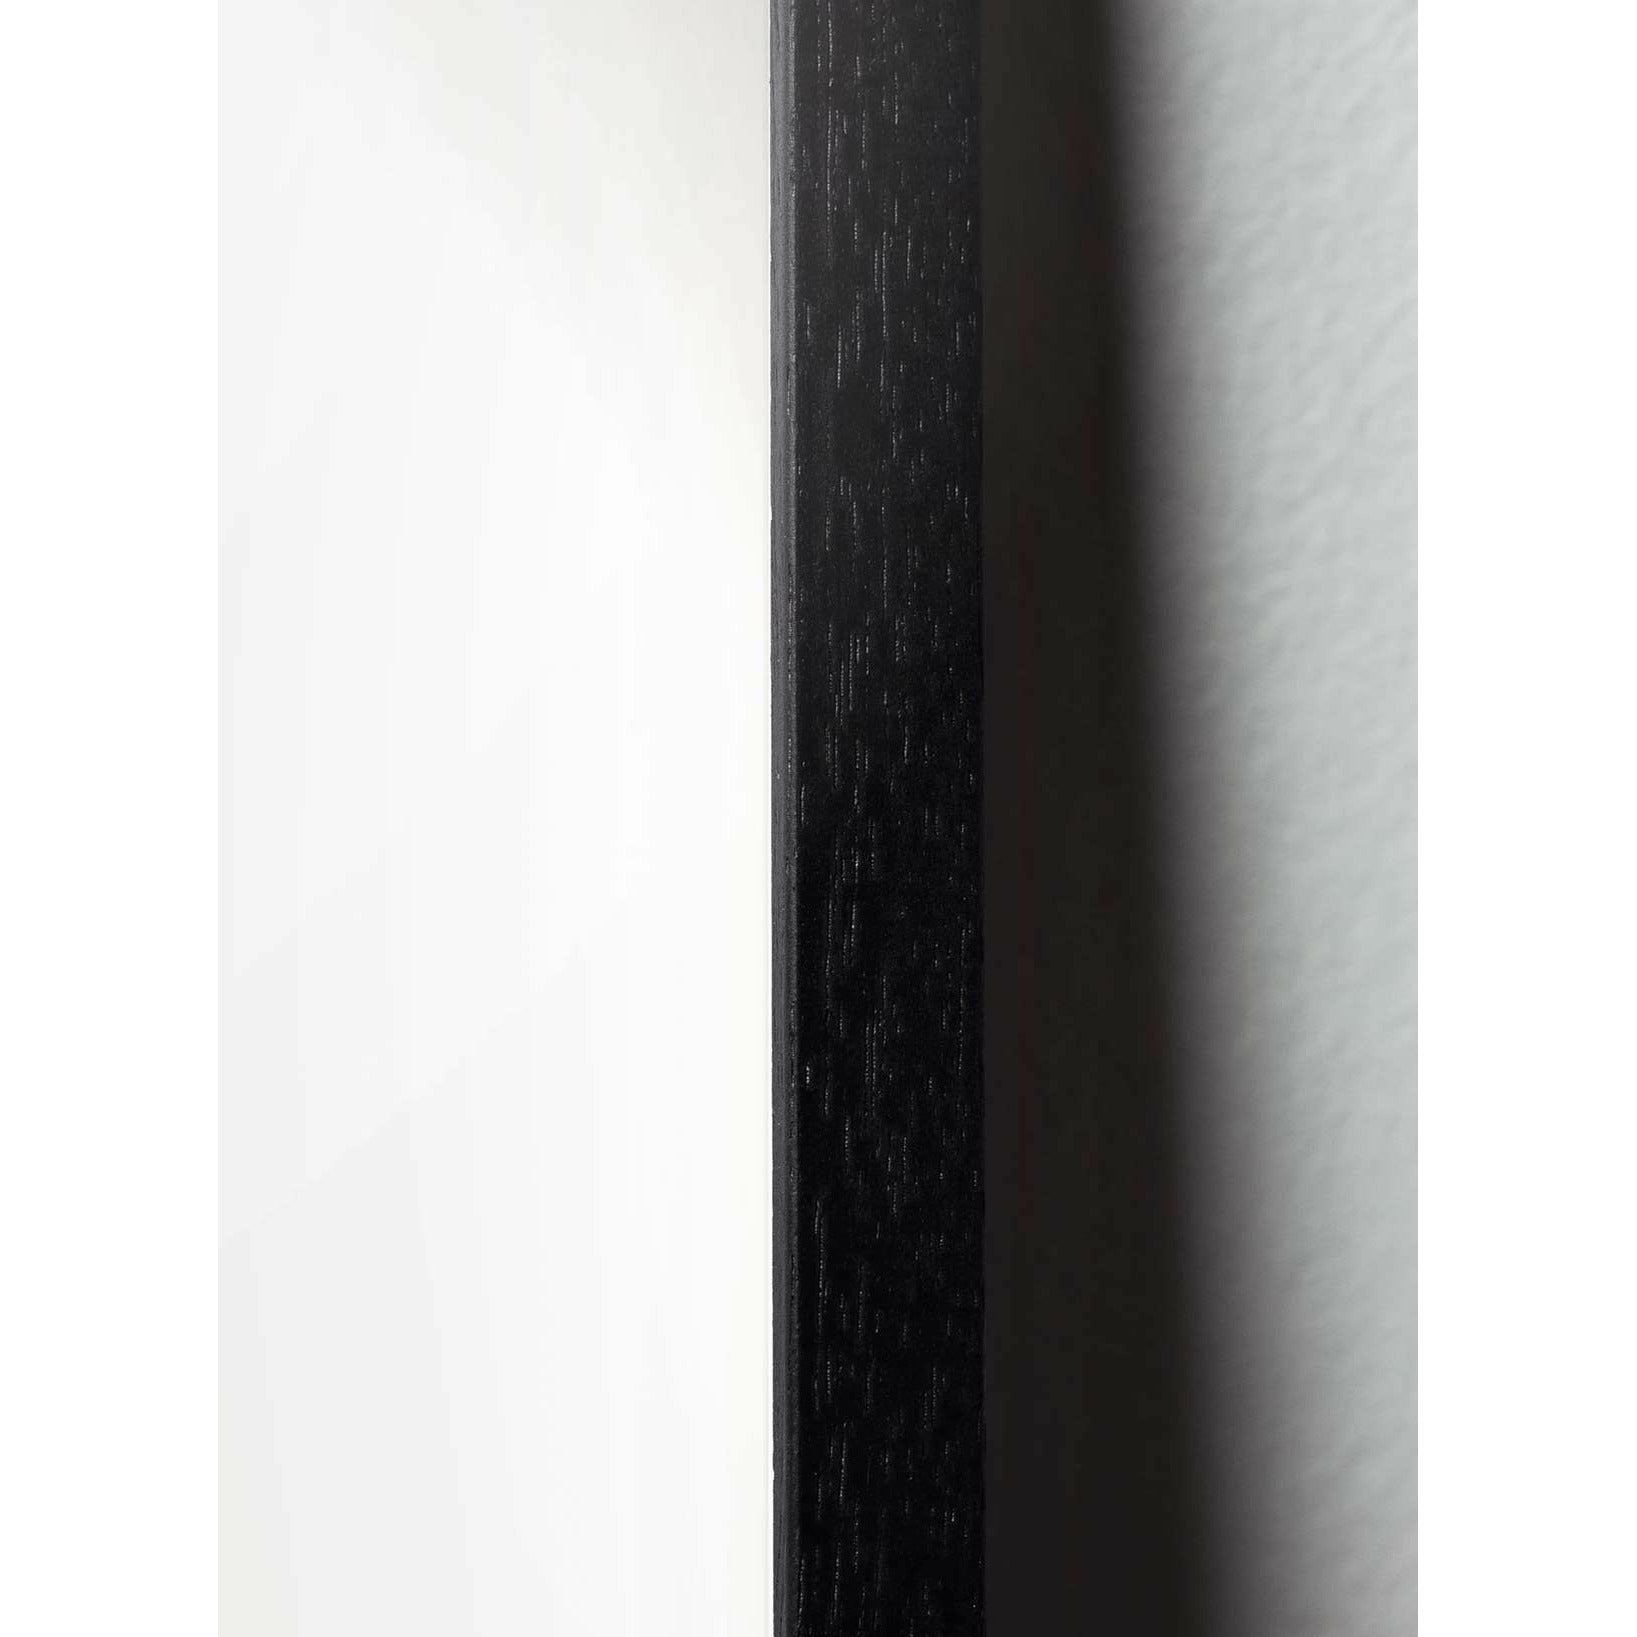 brainchild Klassisches Poster von Kiefernkegel, Rahmen im schwarz lackierten Holz 50x70 cm, sandfarbener Hintergrund